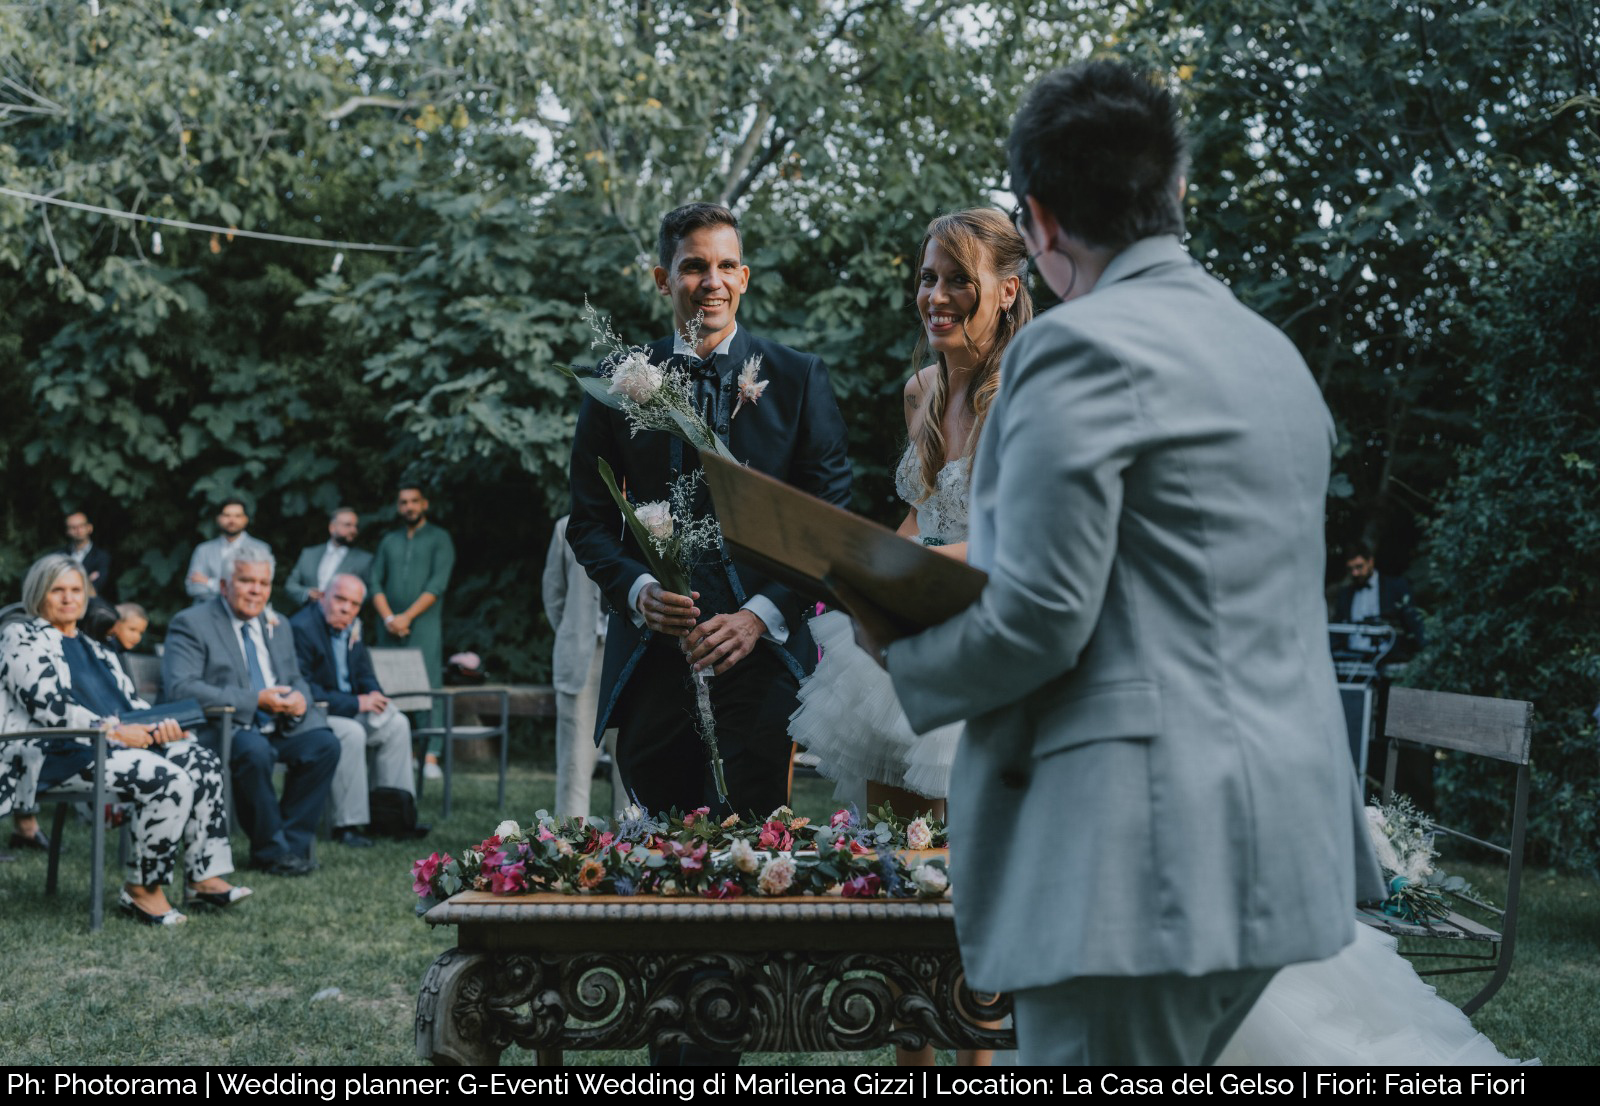 Ph: Photorama | Wedding planner: G-Eventi Wedding di Marilena Gizzi | Location: La Casa del Gelso | Fiori: Faieta Fiori